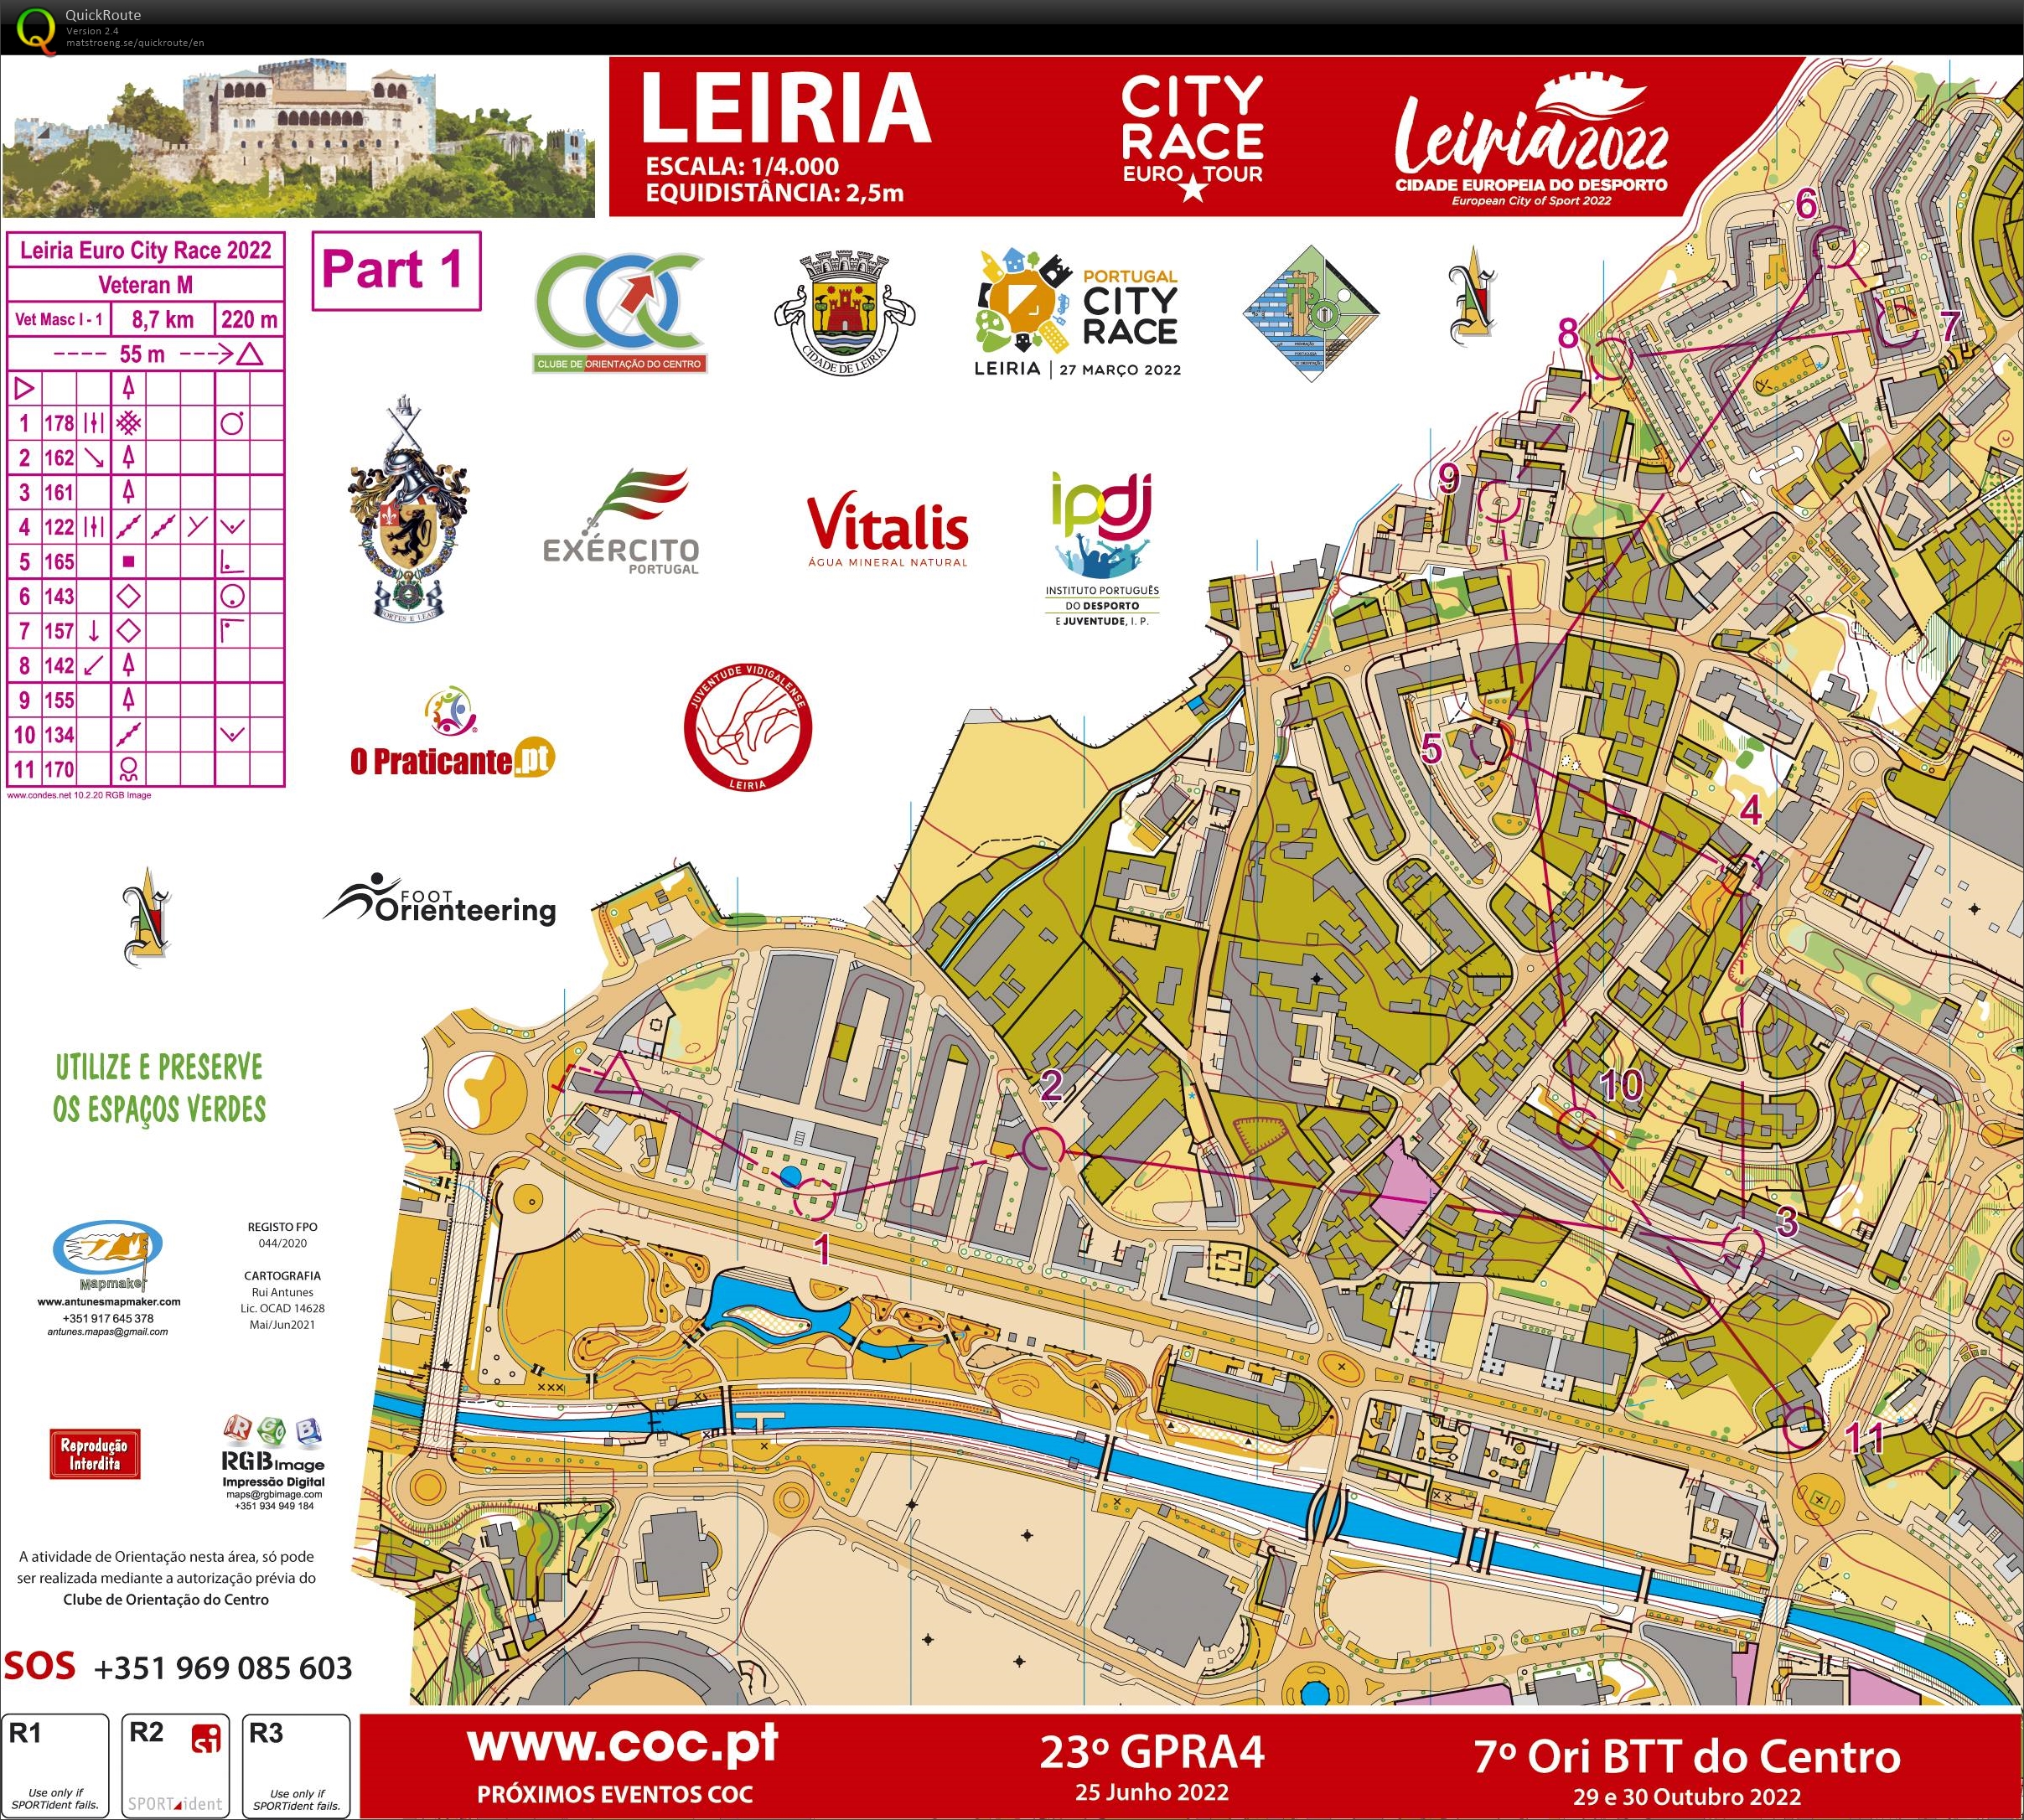 Leiria City Race Euro Tour 2022 (Part1) (27-03-2022)